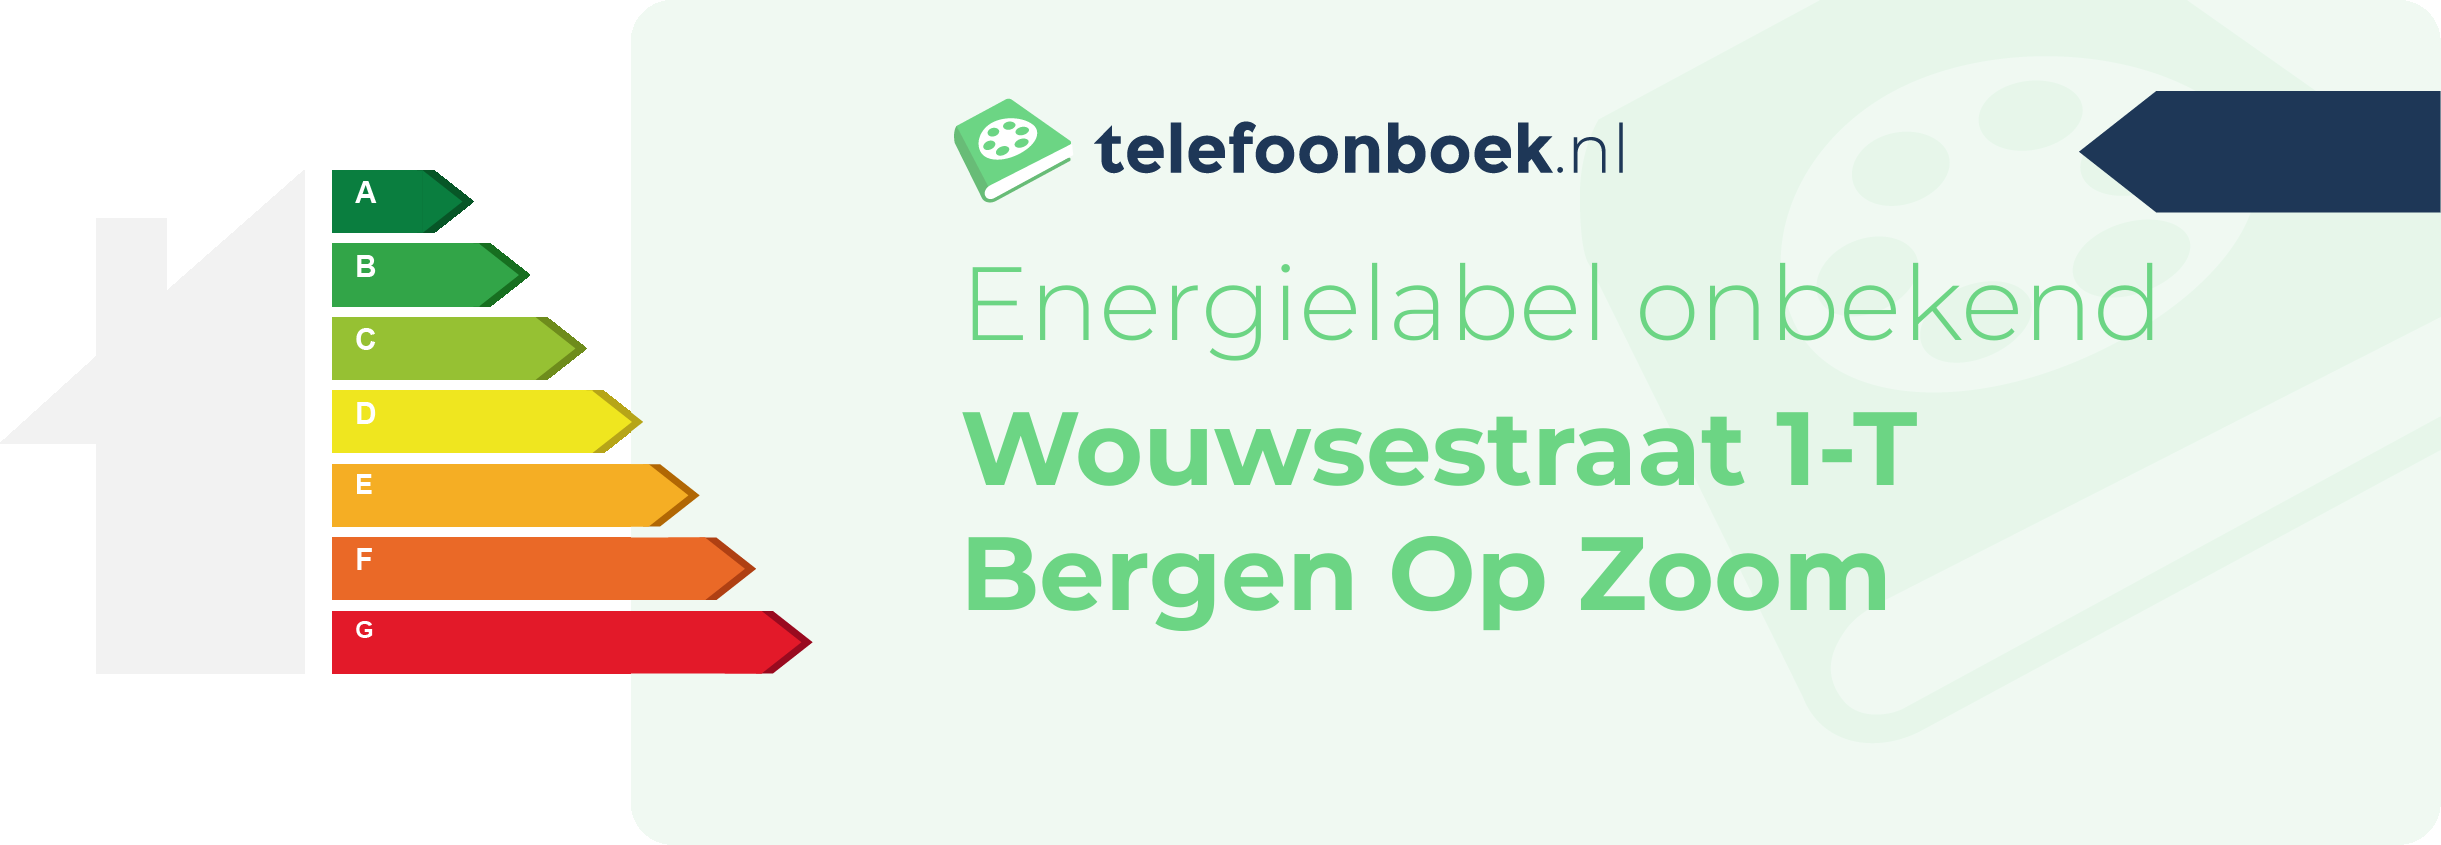 Energielabel Wouwsestraat 1-T Bergen Op Zoom